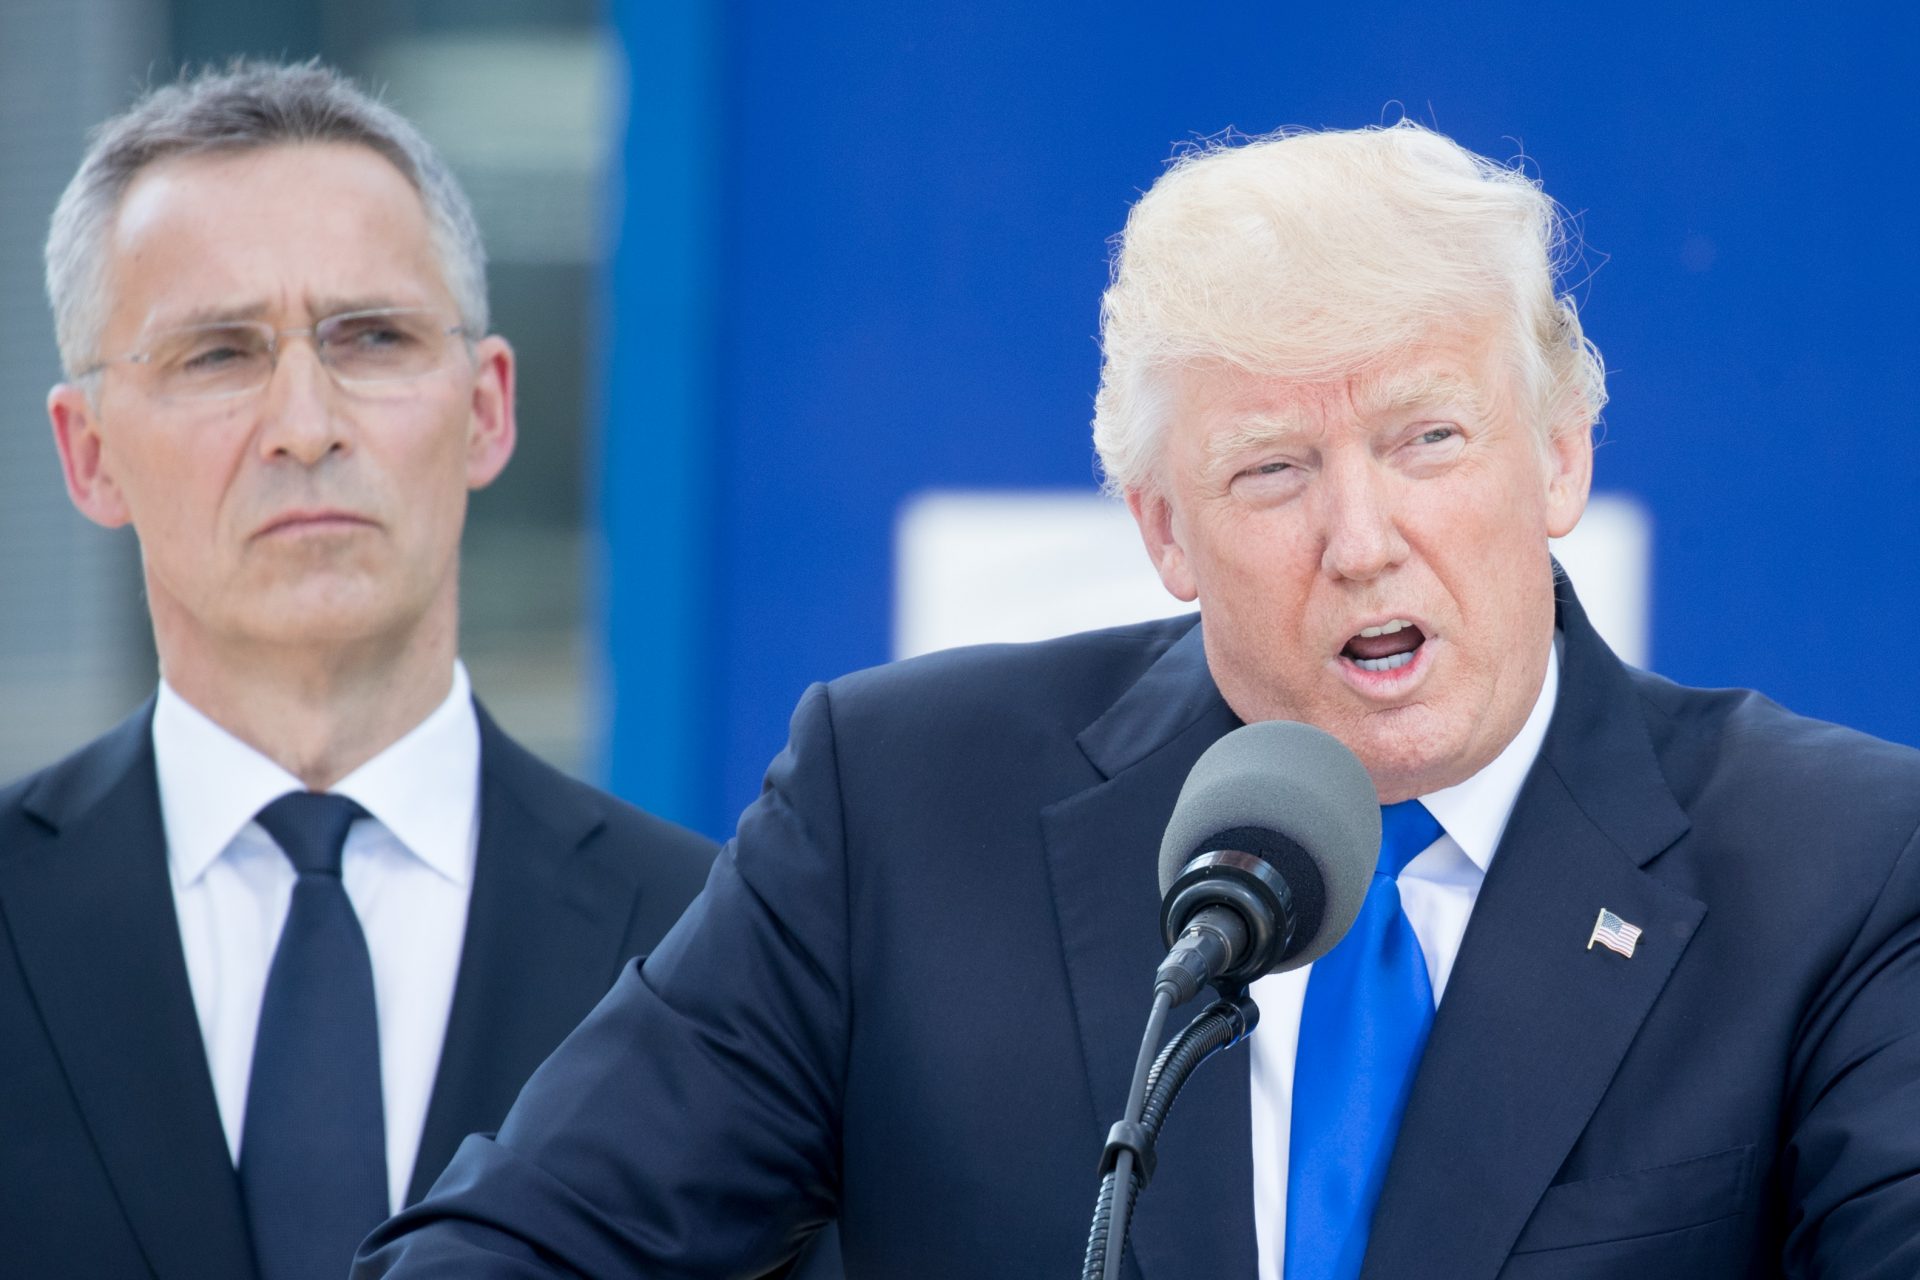 Donald Trump has been a big NATO critic 